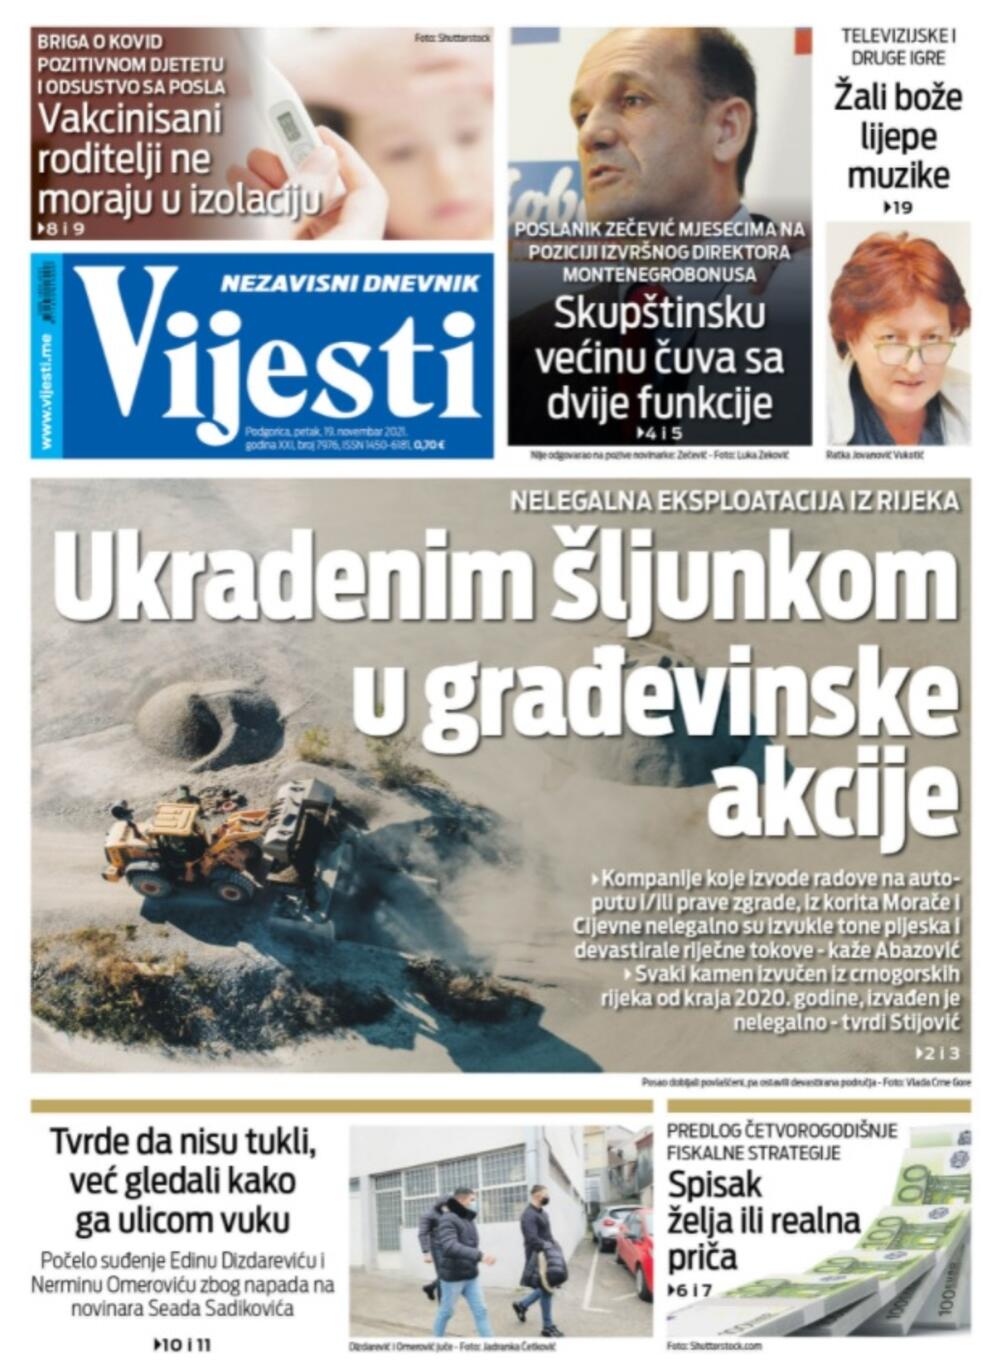 Naslovna strana "Vijesti" za 19.11.2021., Foto: Vijesti